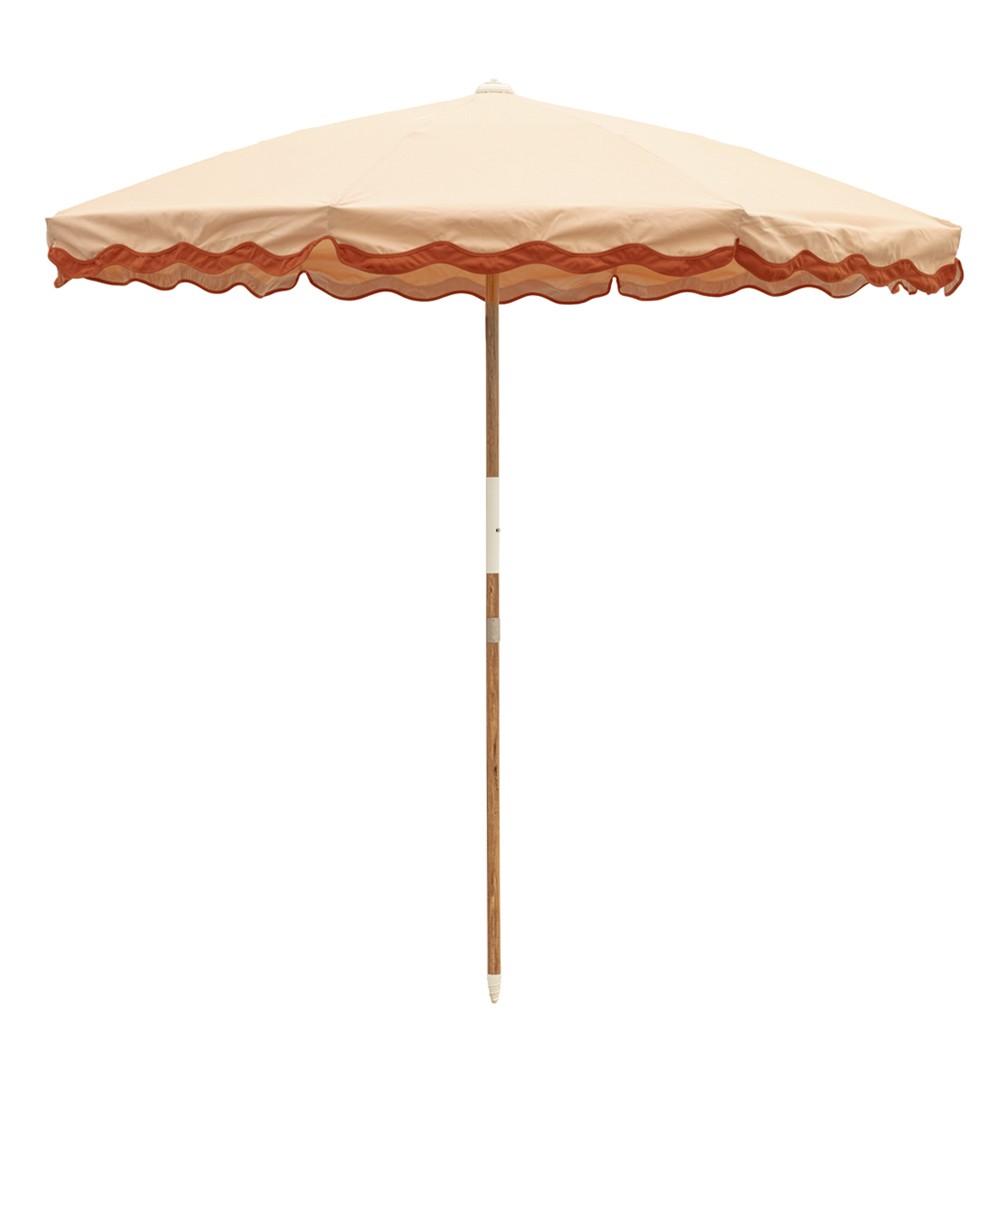 Der Sonnenschirm Amalfi Beach Umbrella  im Rivie Pink Design aus der 2024 Sommer Kollektion von Business & Pleasure im RAUM concept store.